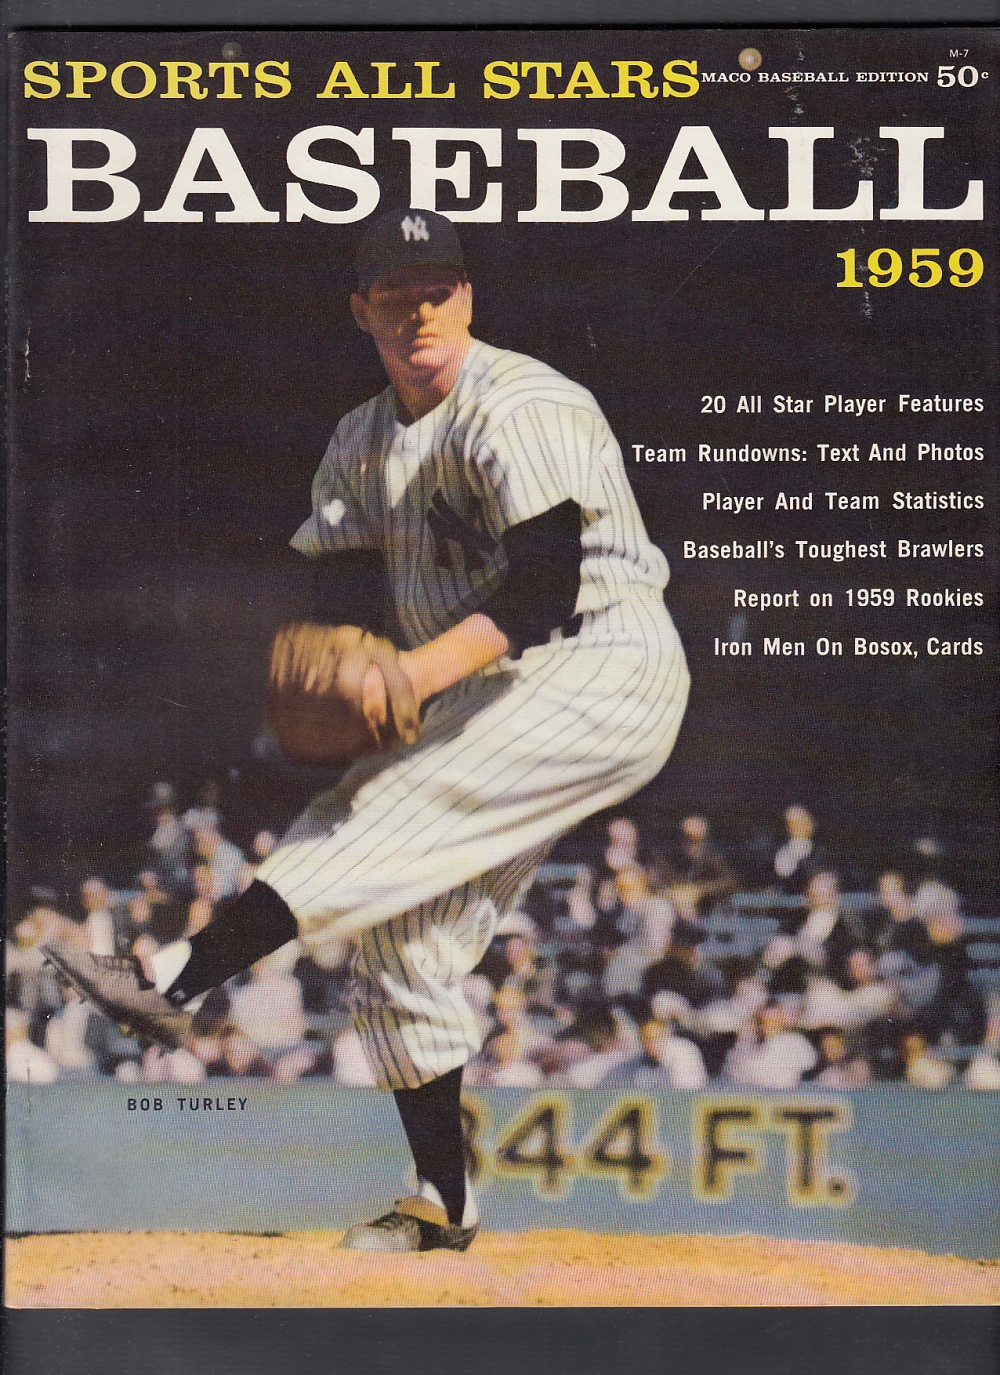 1959 BASEBALL ALL STARS FULL MAGAZINE M. MANTLE ON COVER photo